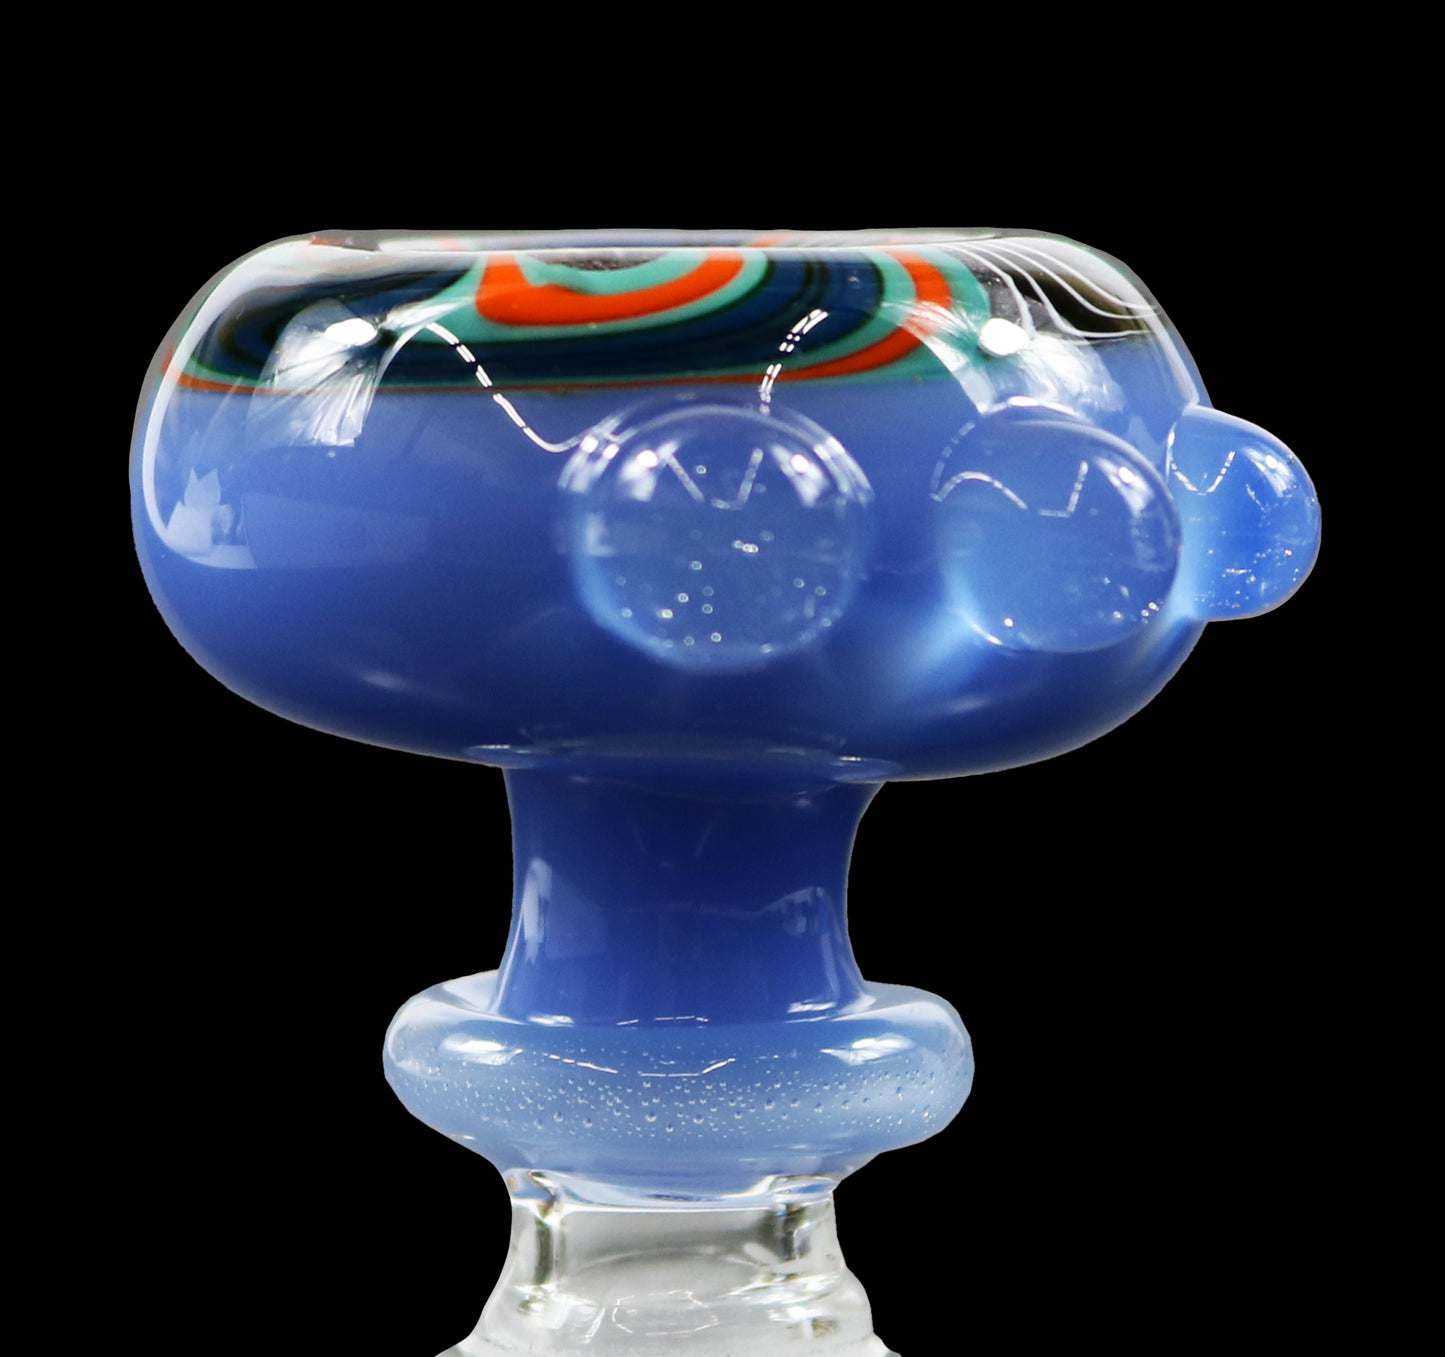 14mm Reversal Bowl Push Slide by Glass by Slick - Light Blue/Orange/Teal/Black/White/Silver Glitter